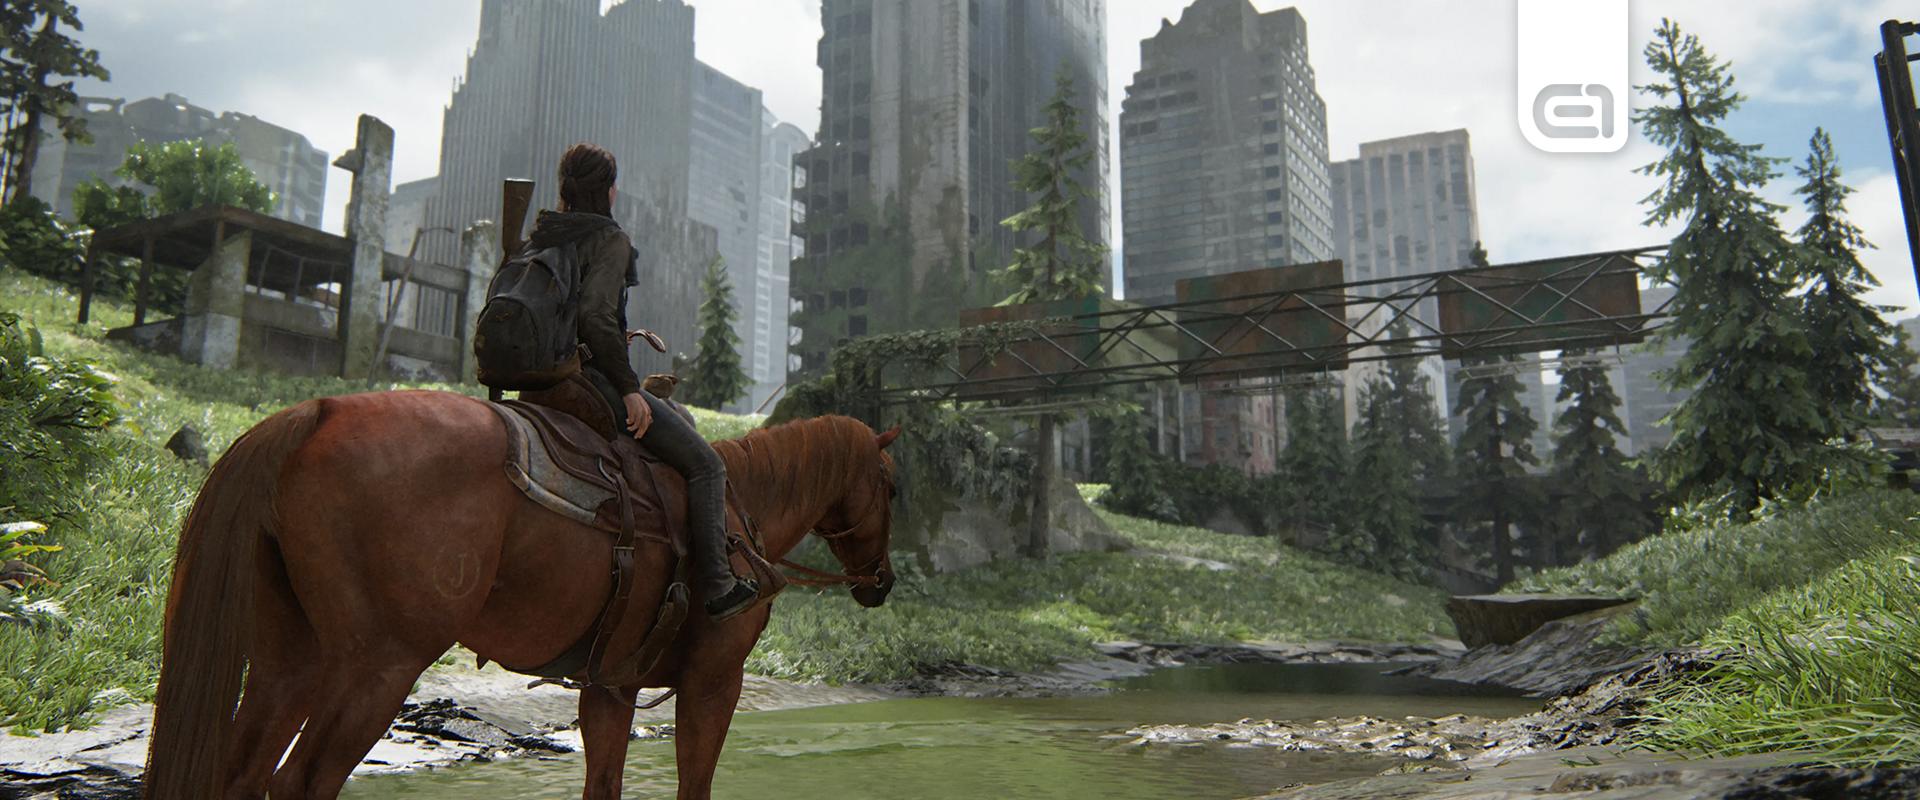 PS4-re és PS5-re is megjelenhet még a következő The Last of Us